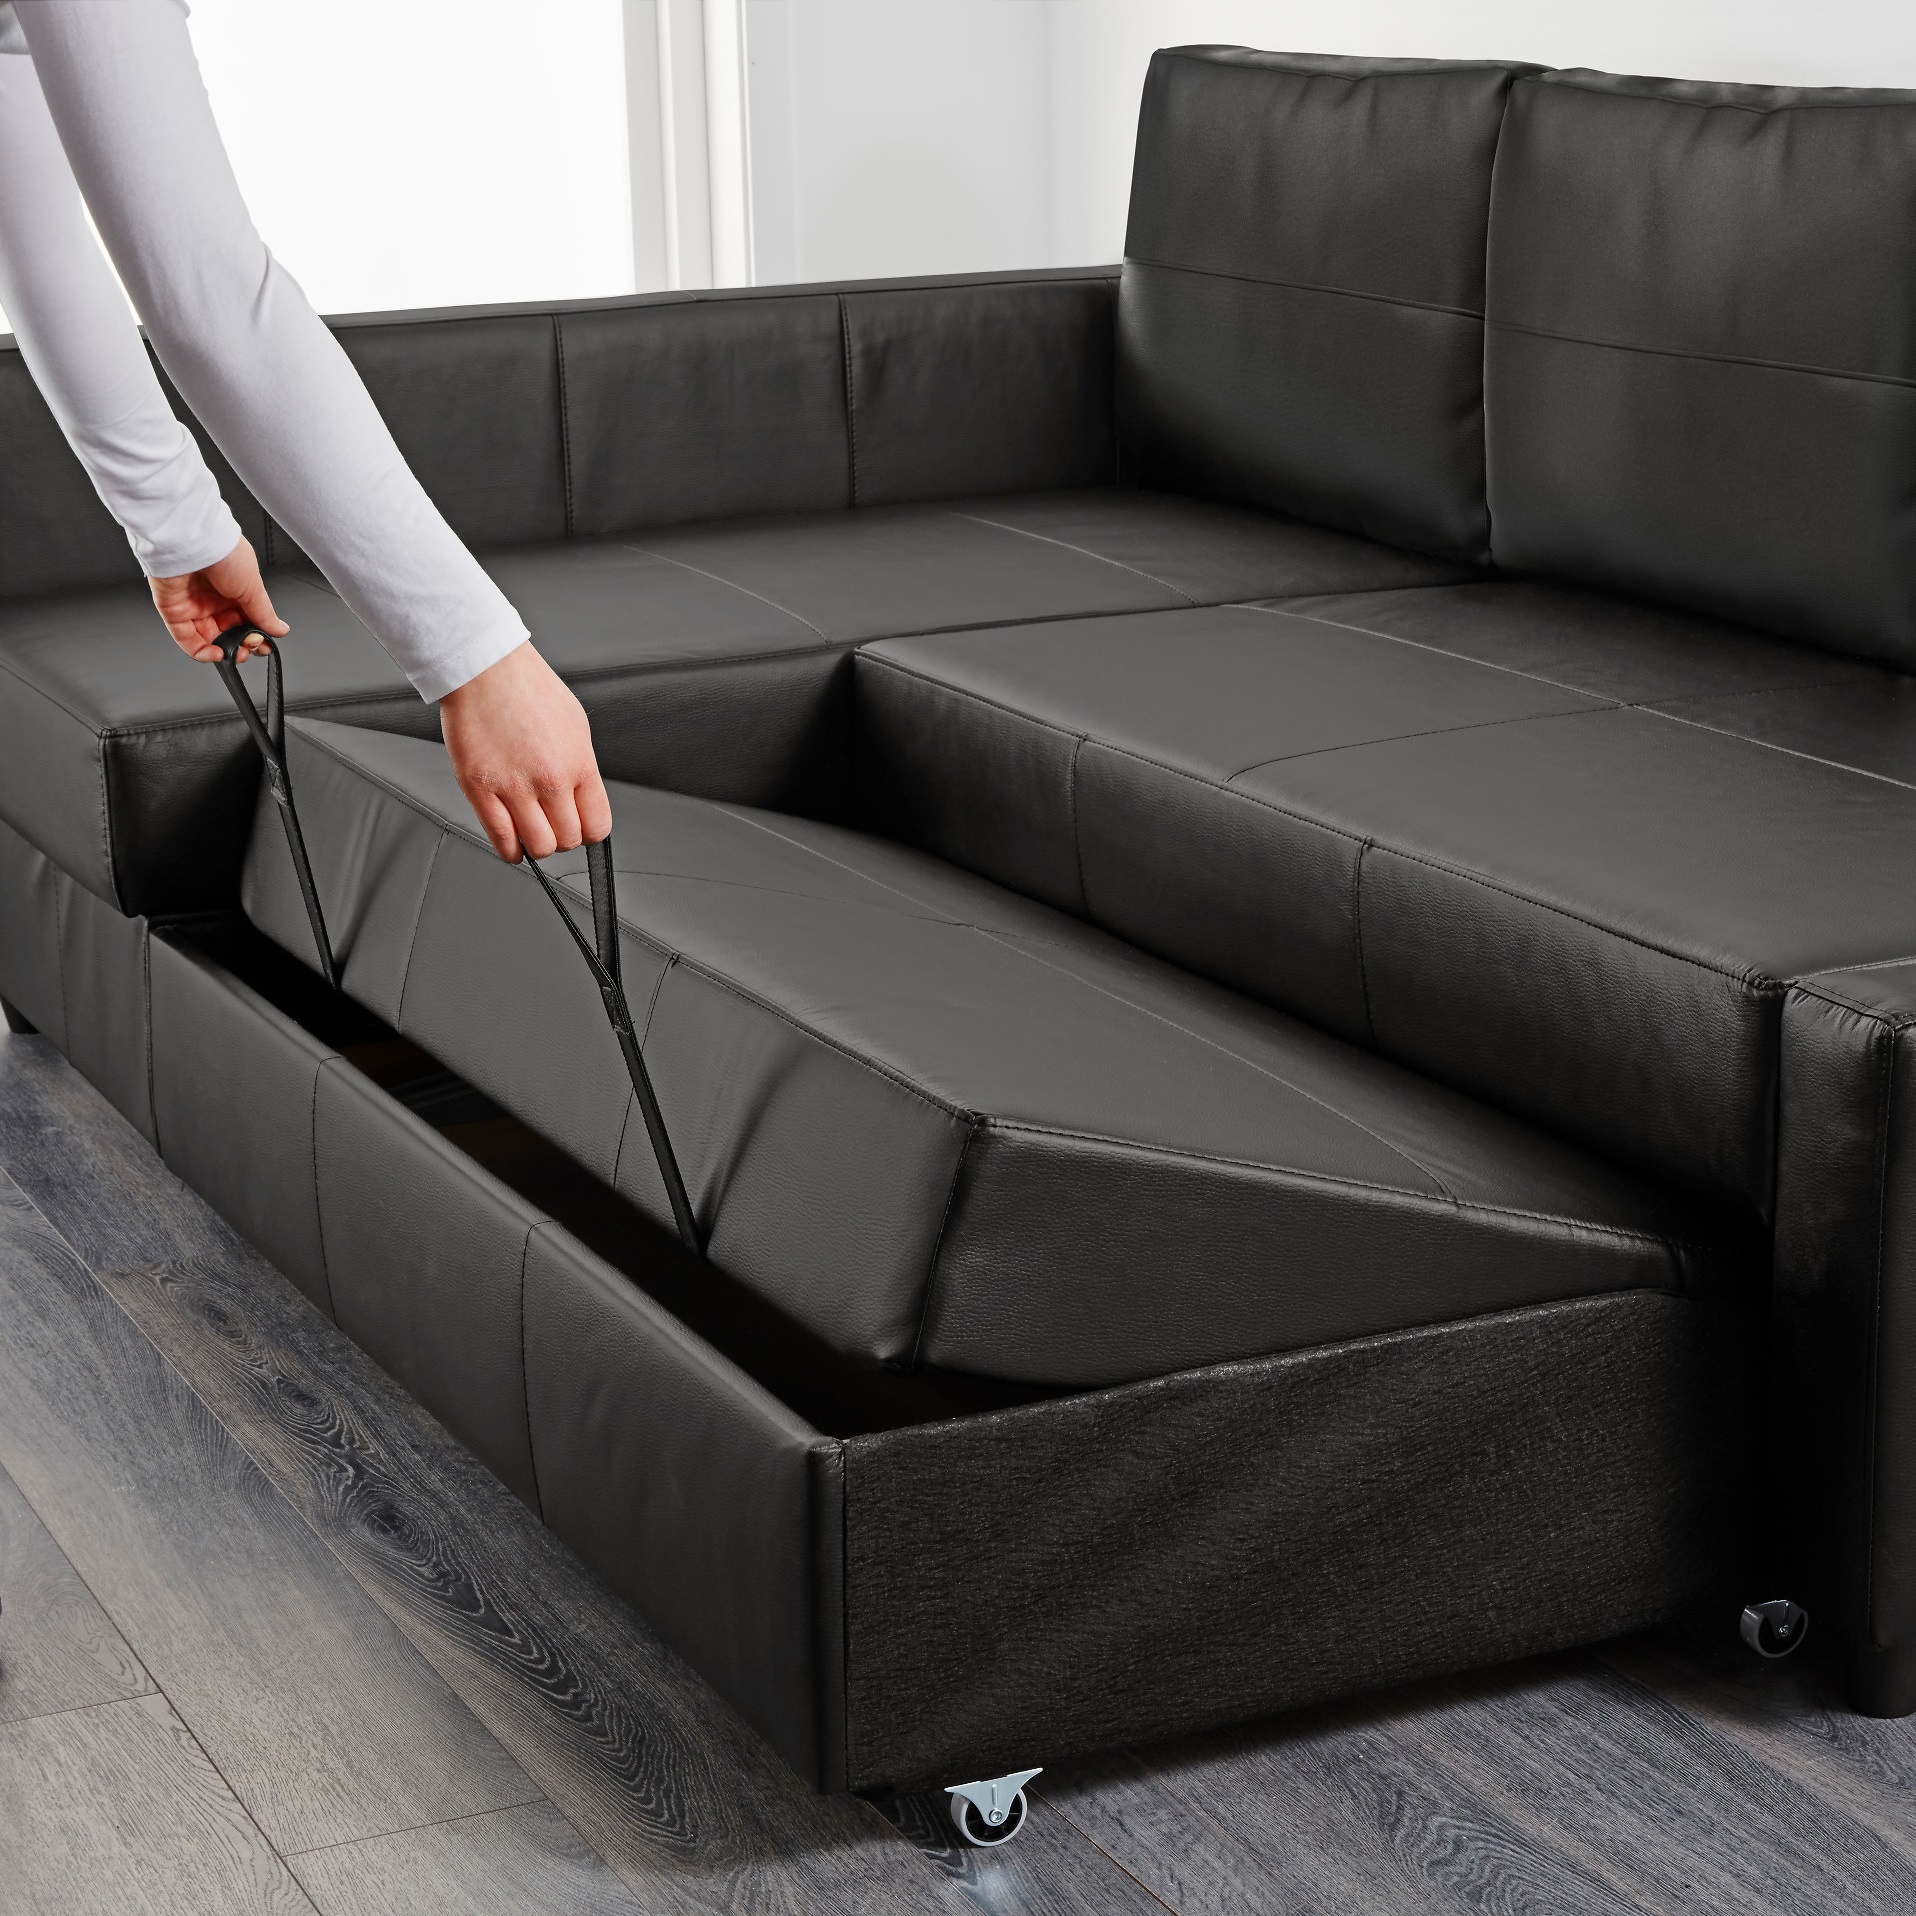 А для того, щоб спати з комфортом, варто звернути увагу на диван-трансформер, такі зазвичай перетворюються в зручні ліжка